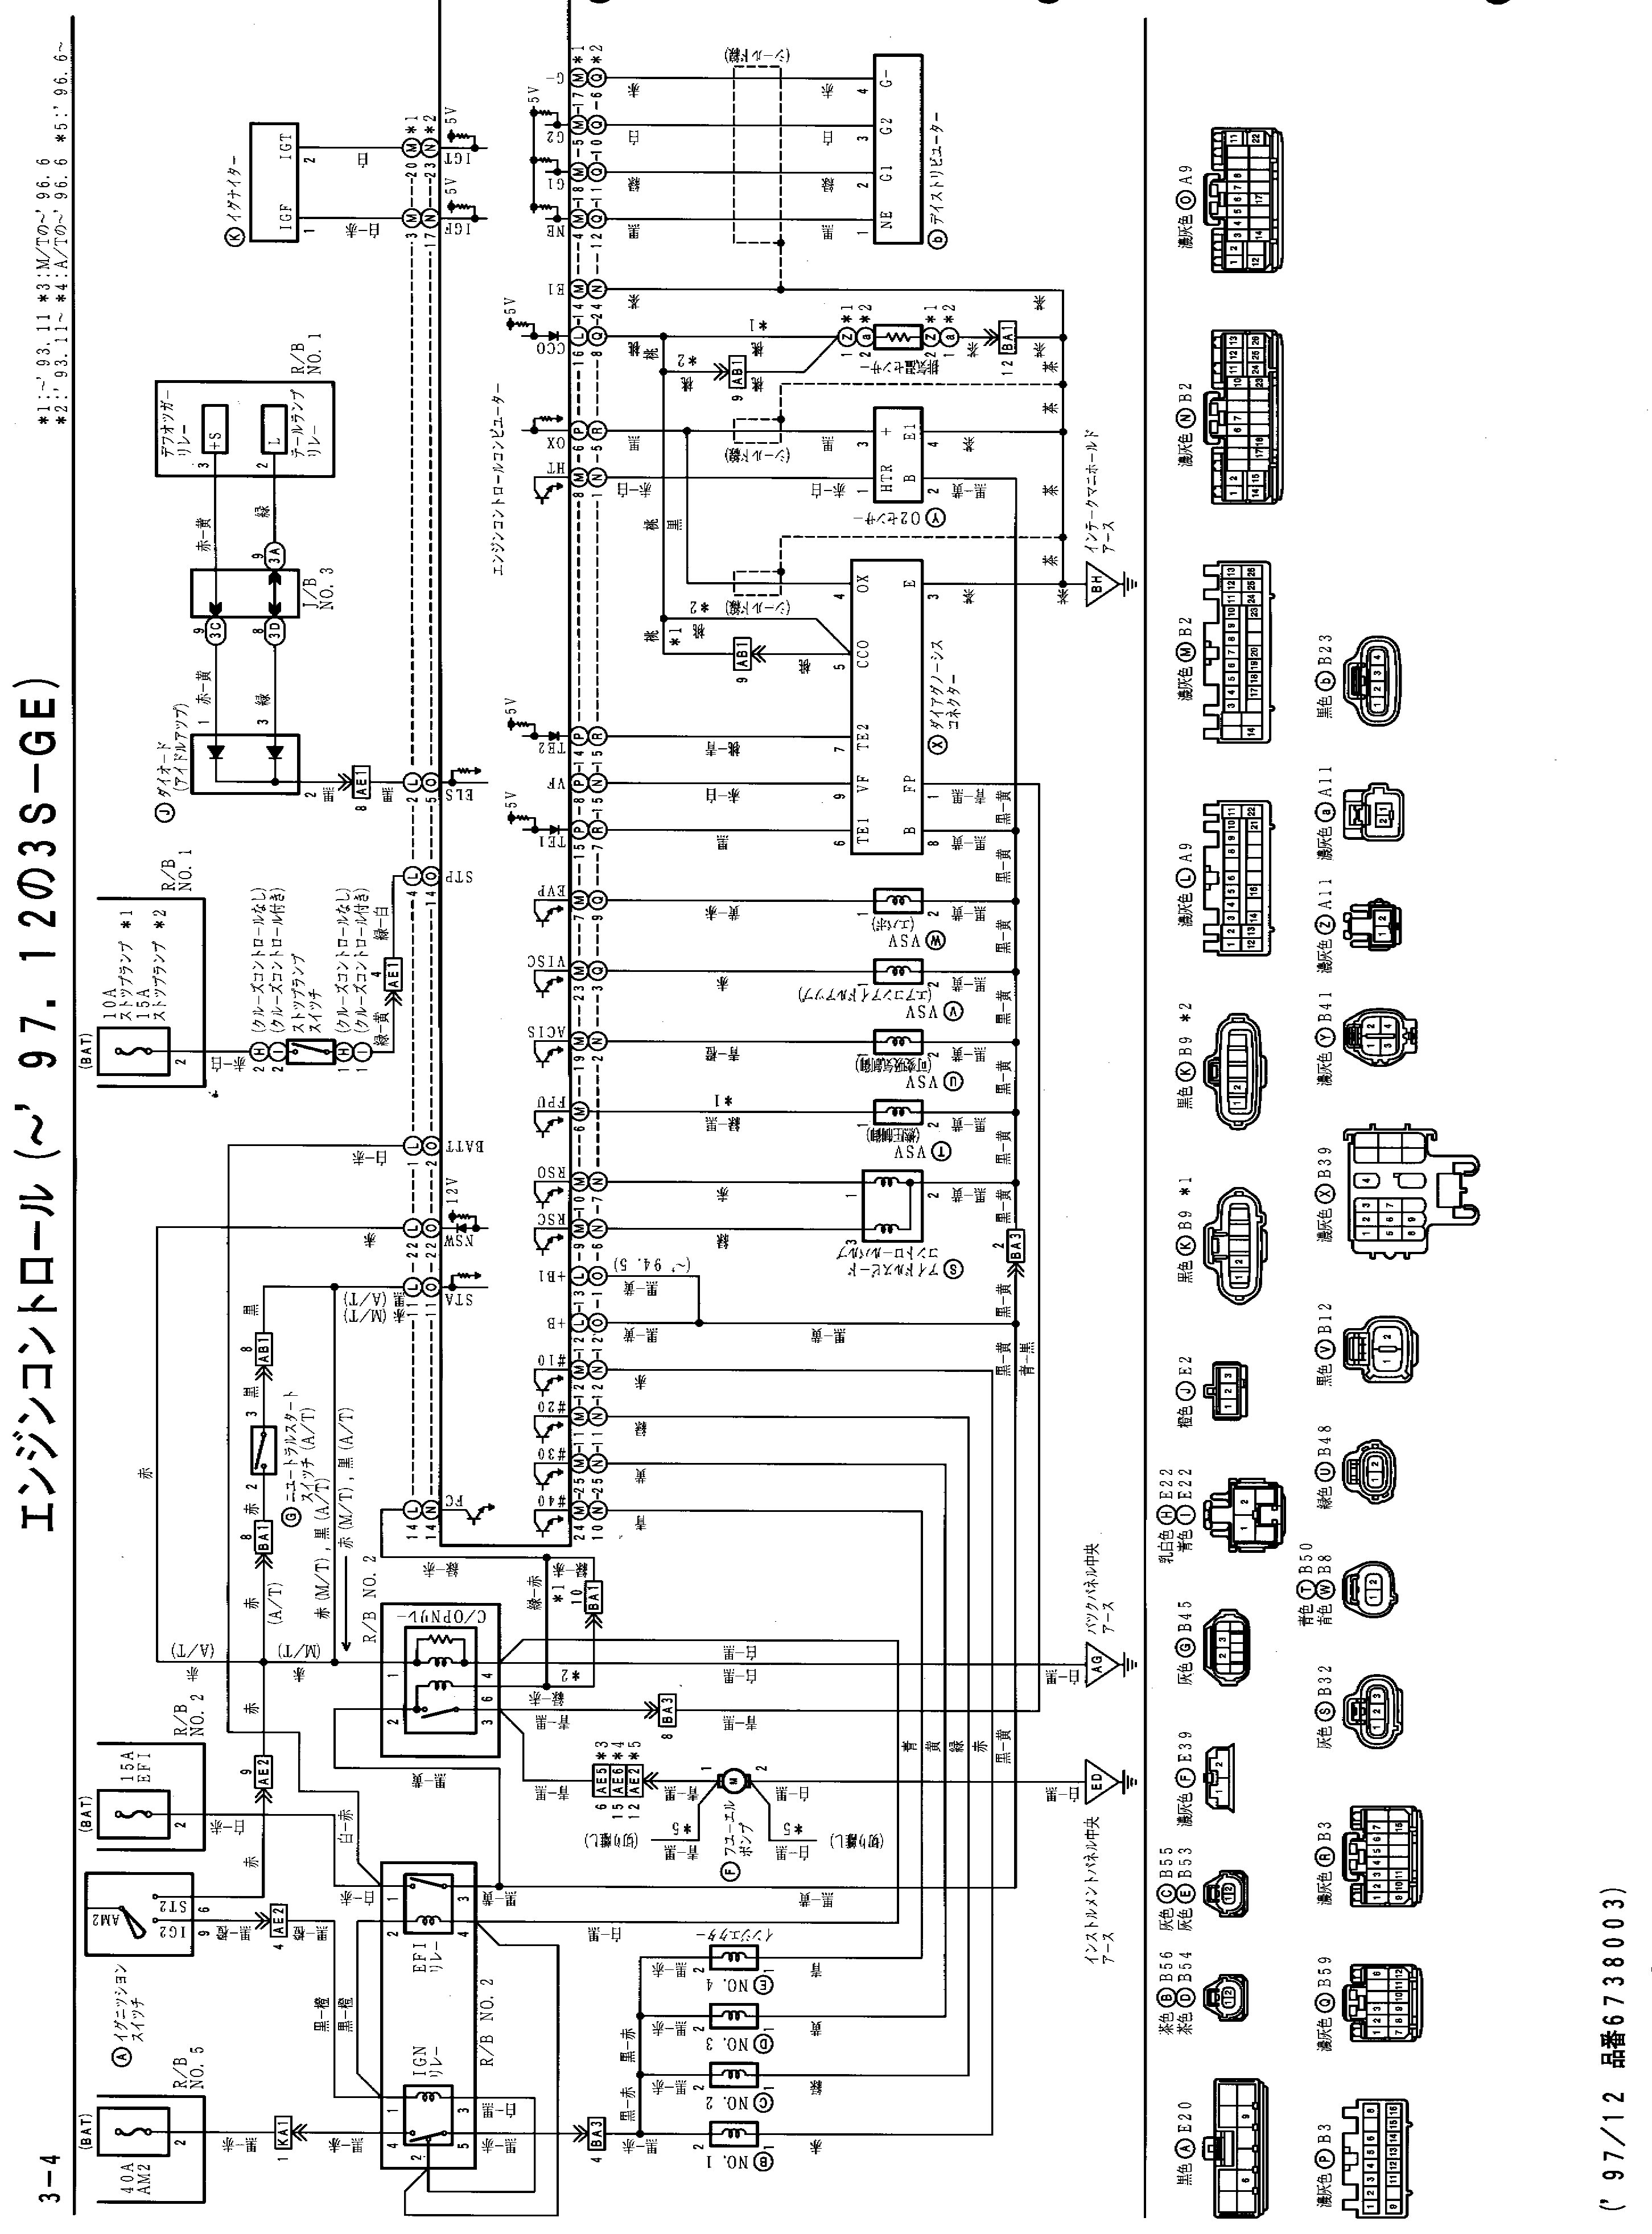 1991 Toyotum Celica Wiring Diagram